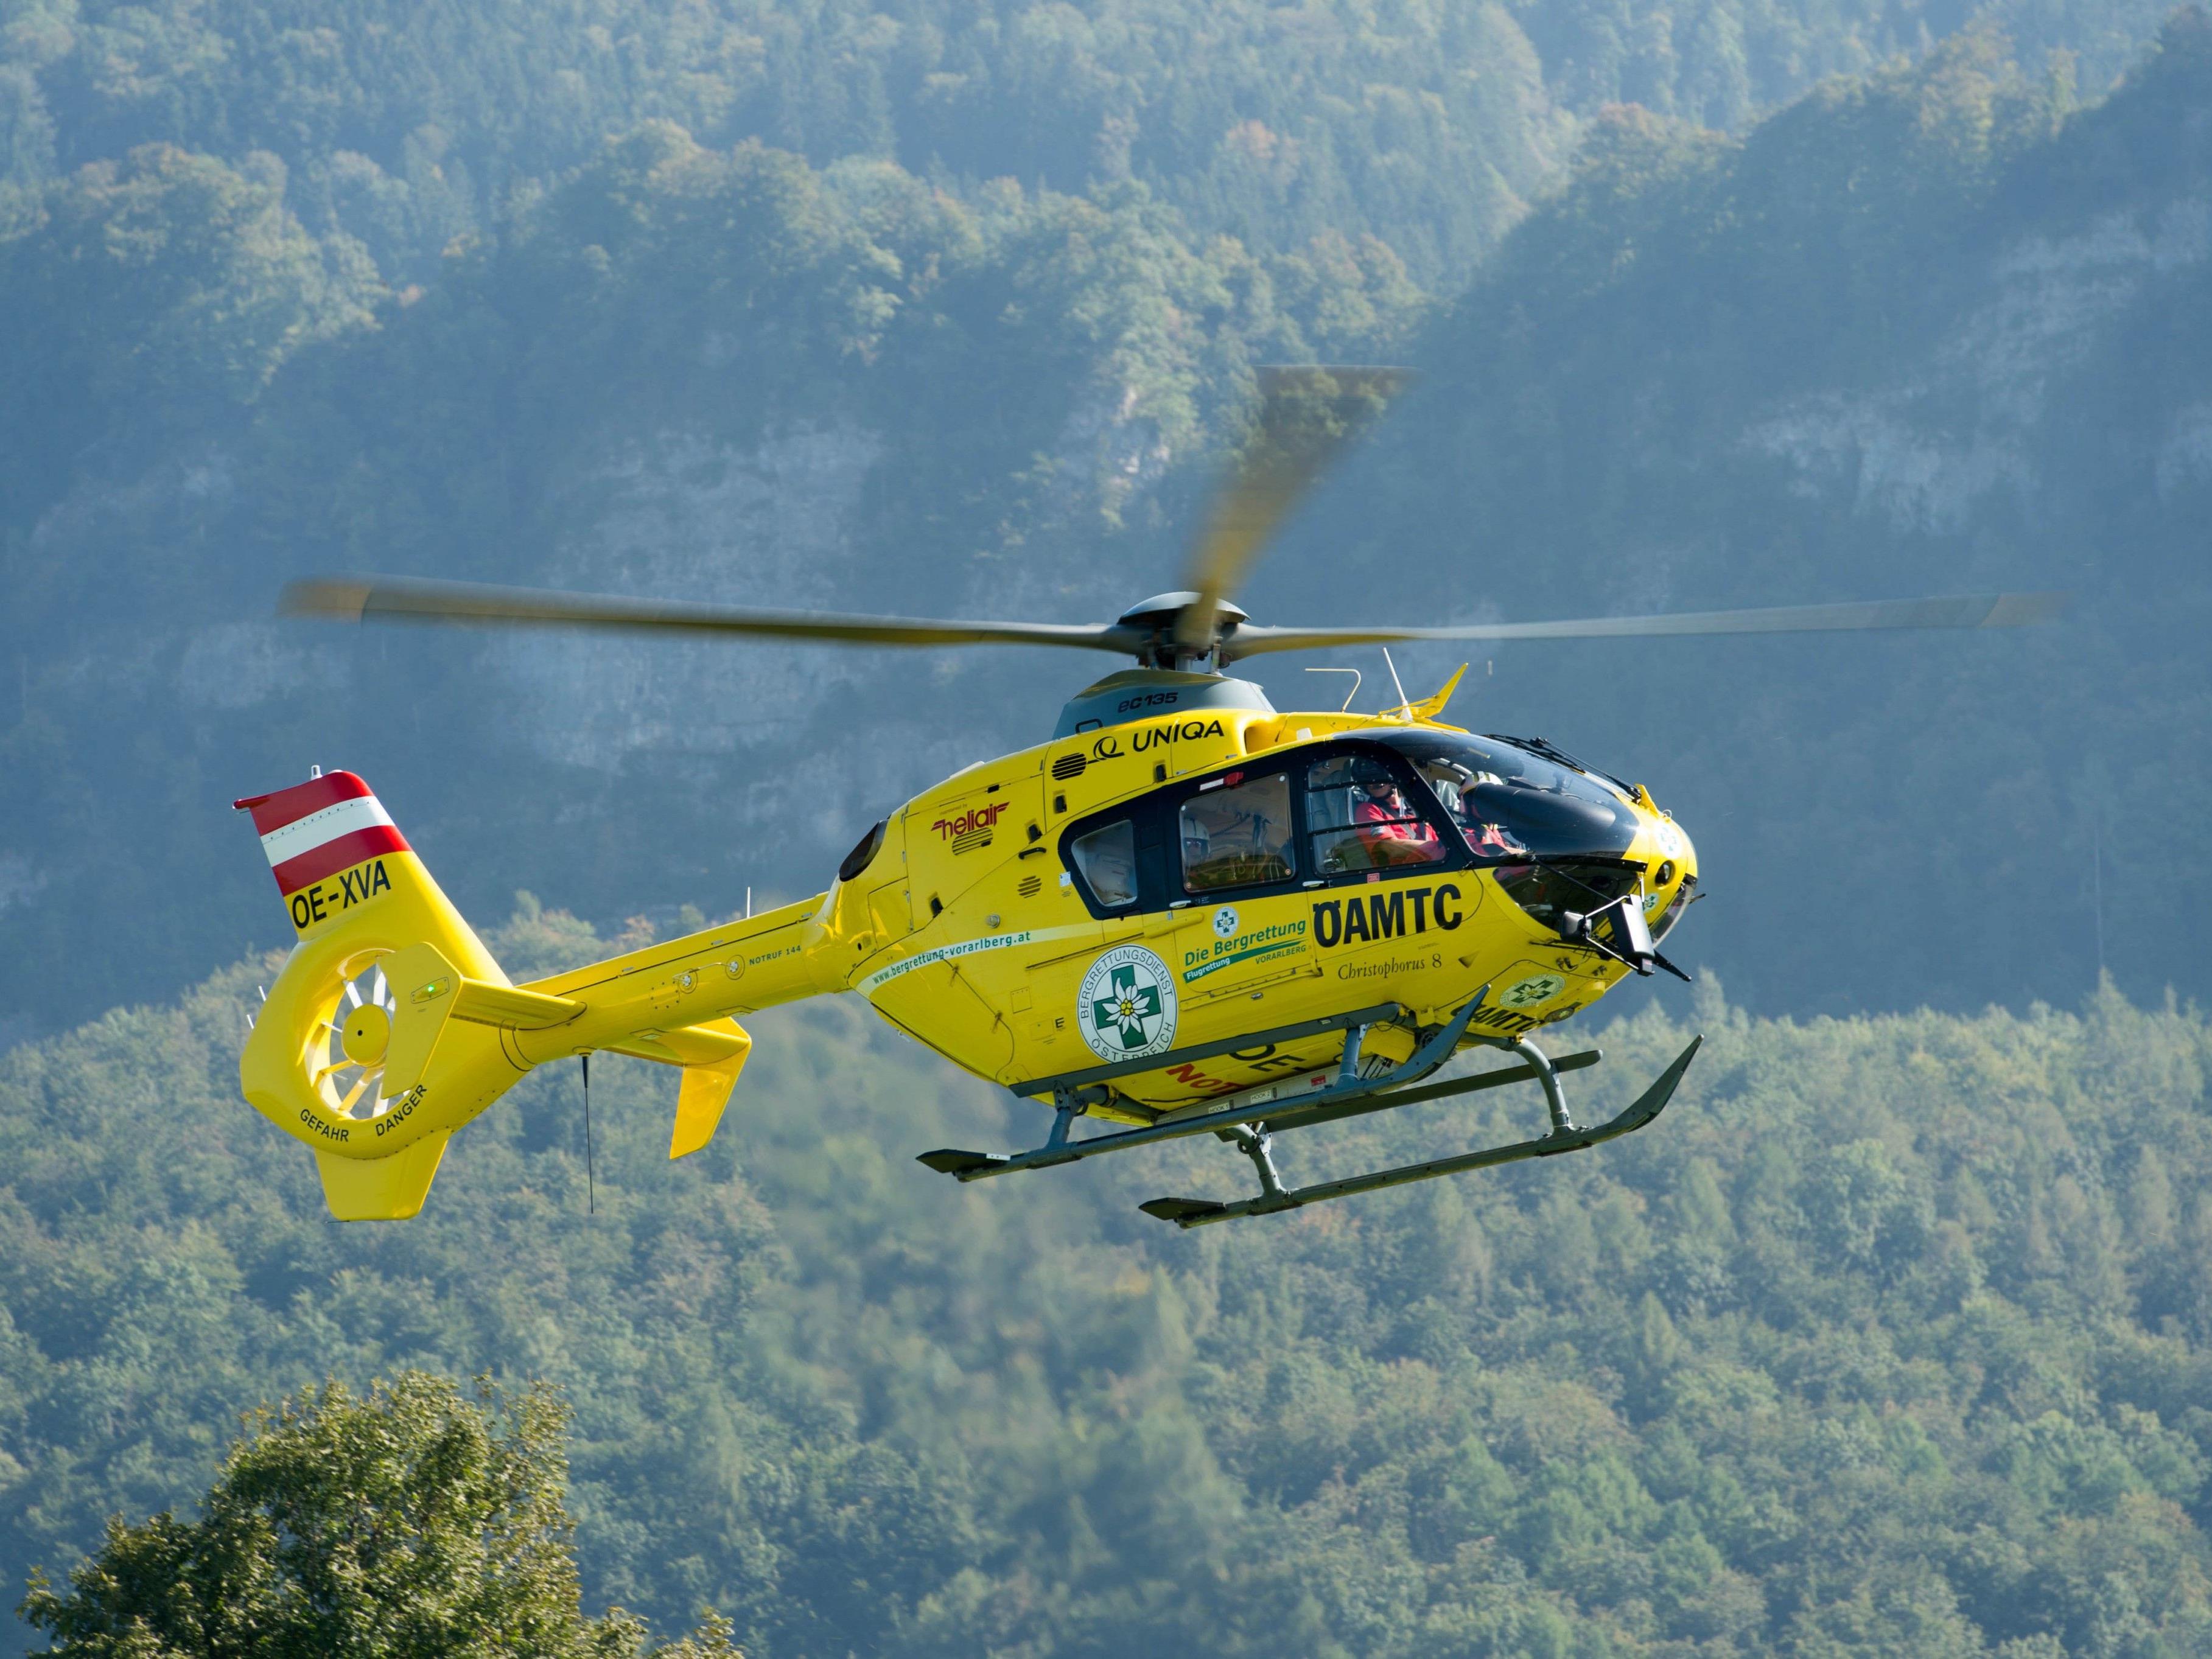 Das verletzte Kind wurde mit dem ÖAMTC-Hubschrauber ins LKH Feldkirch eingeliefert.